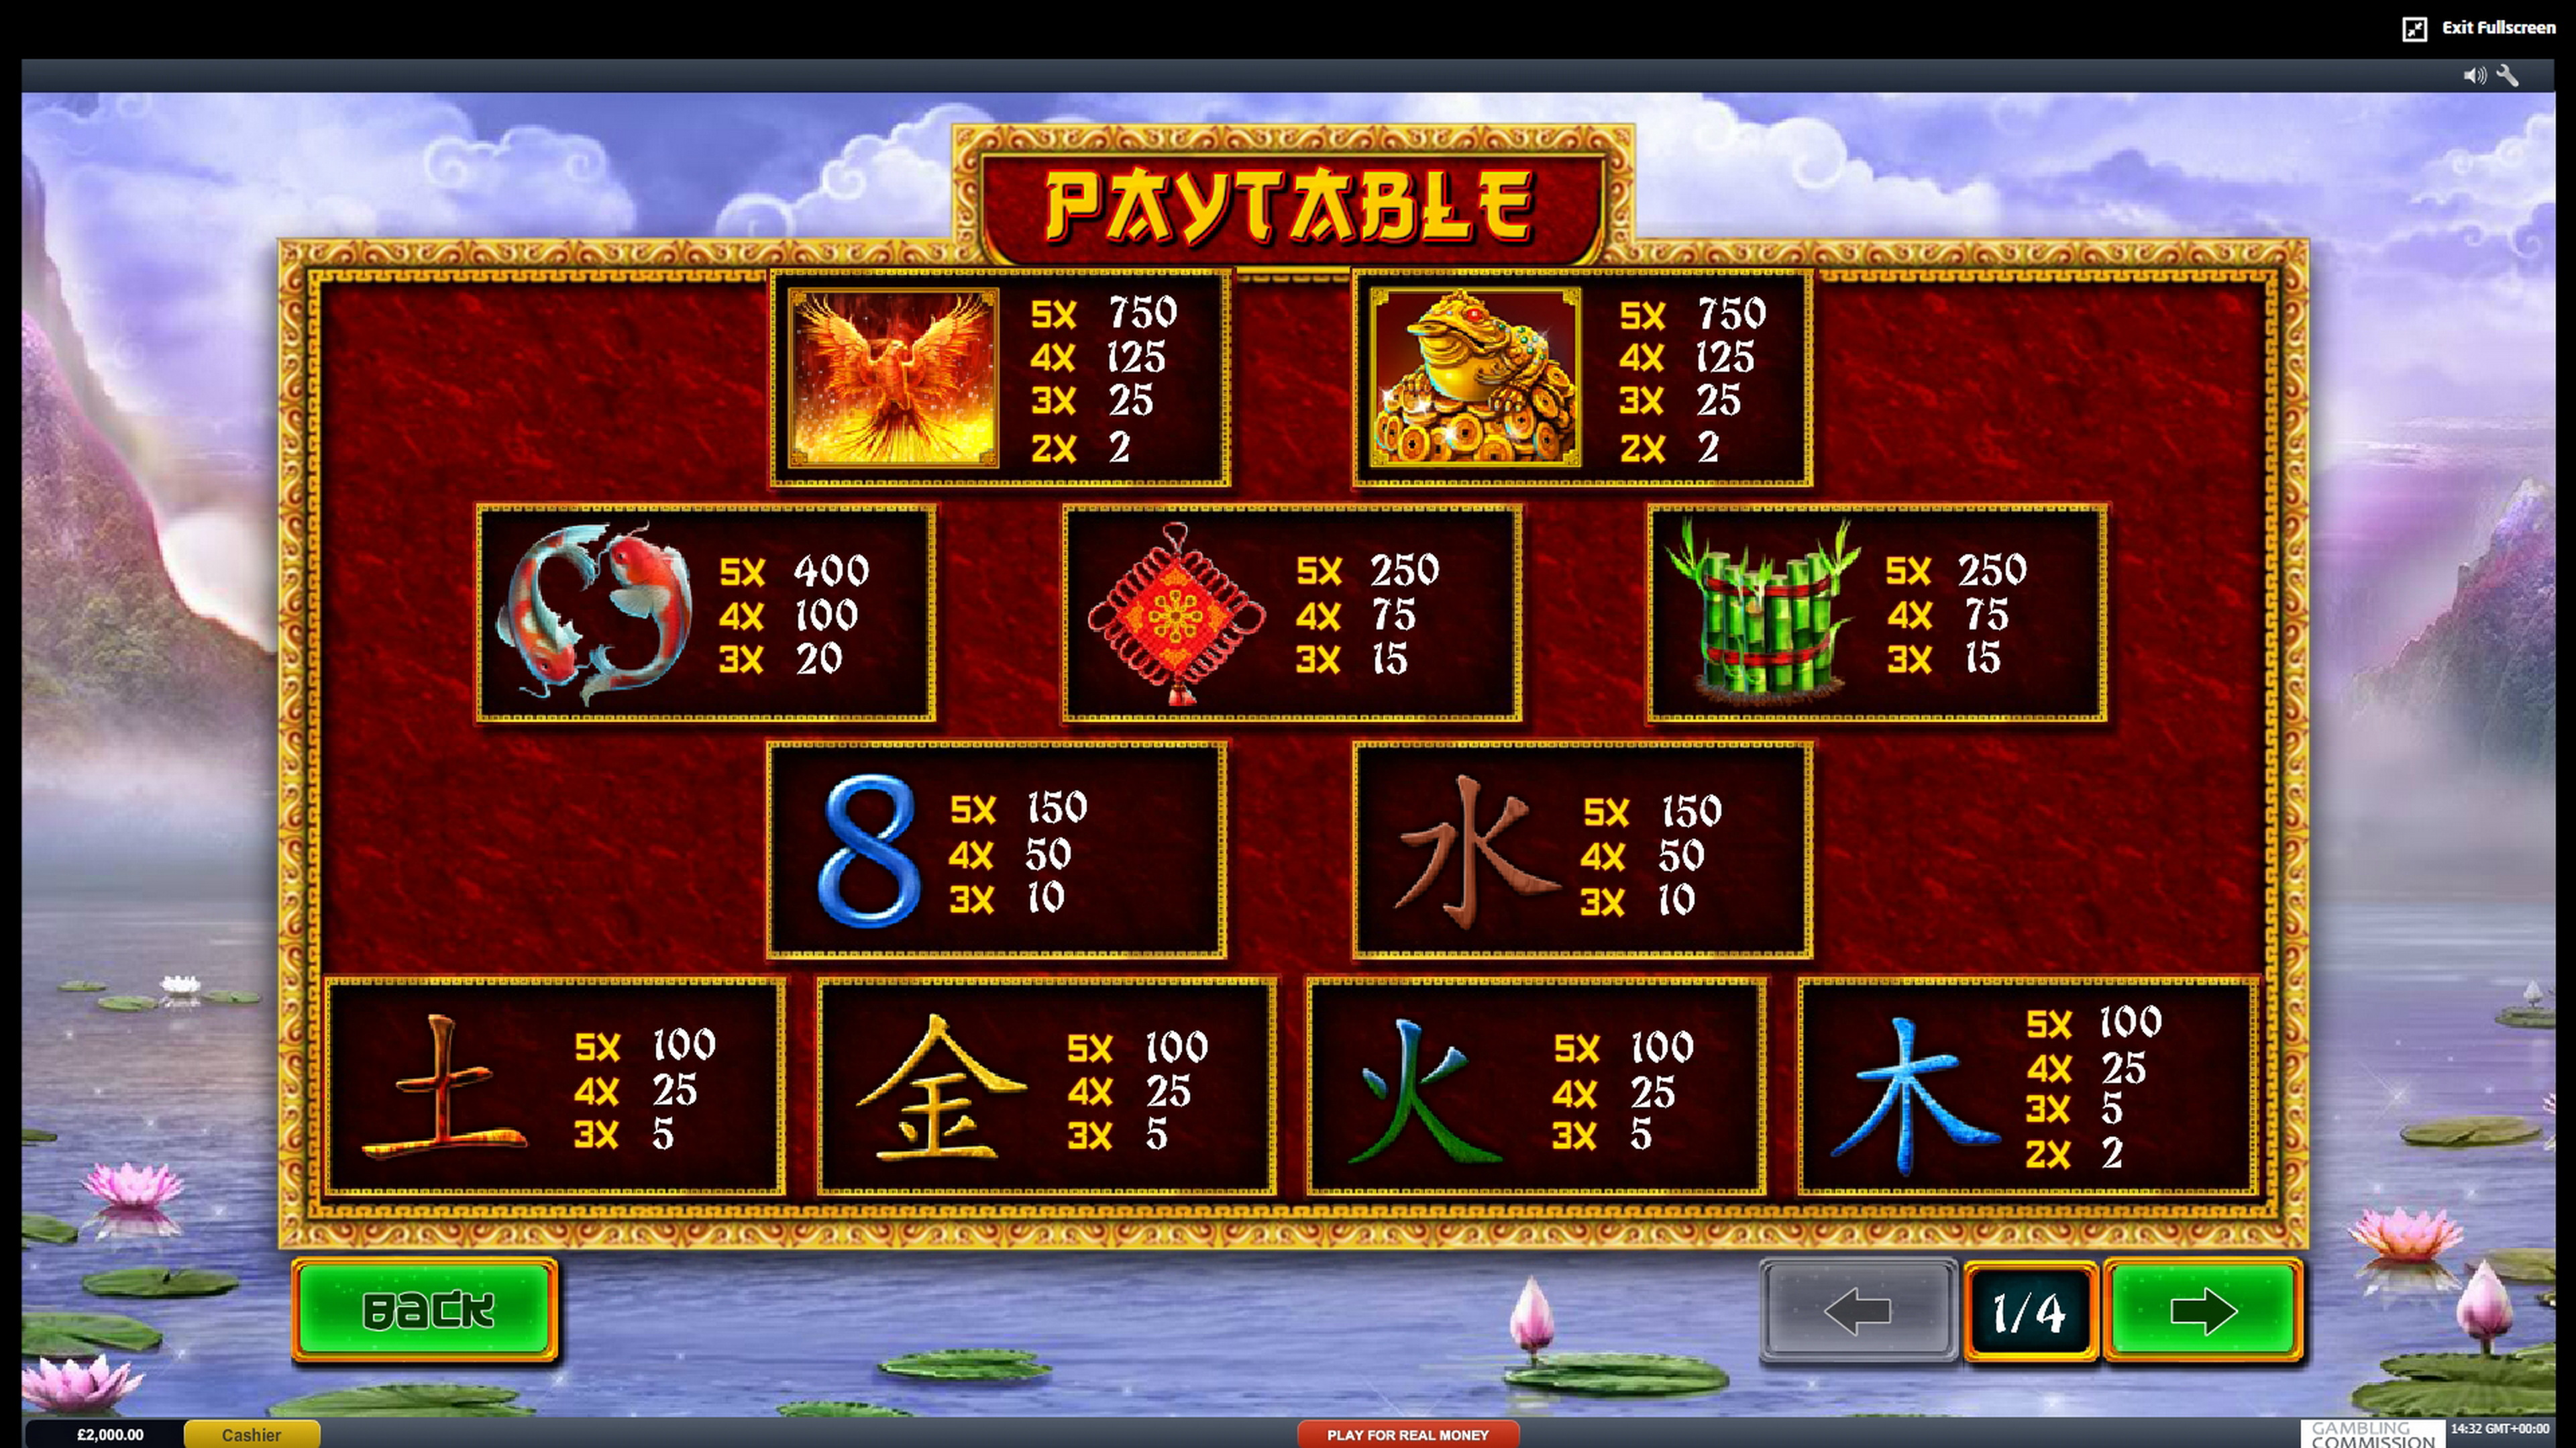 Info of Fei Long Zai Tian Slot Game by Playtech